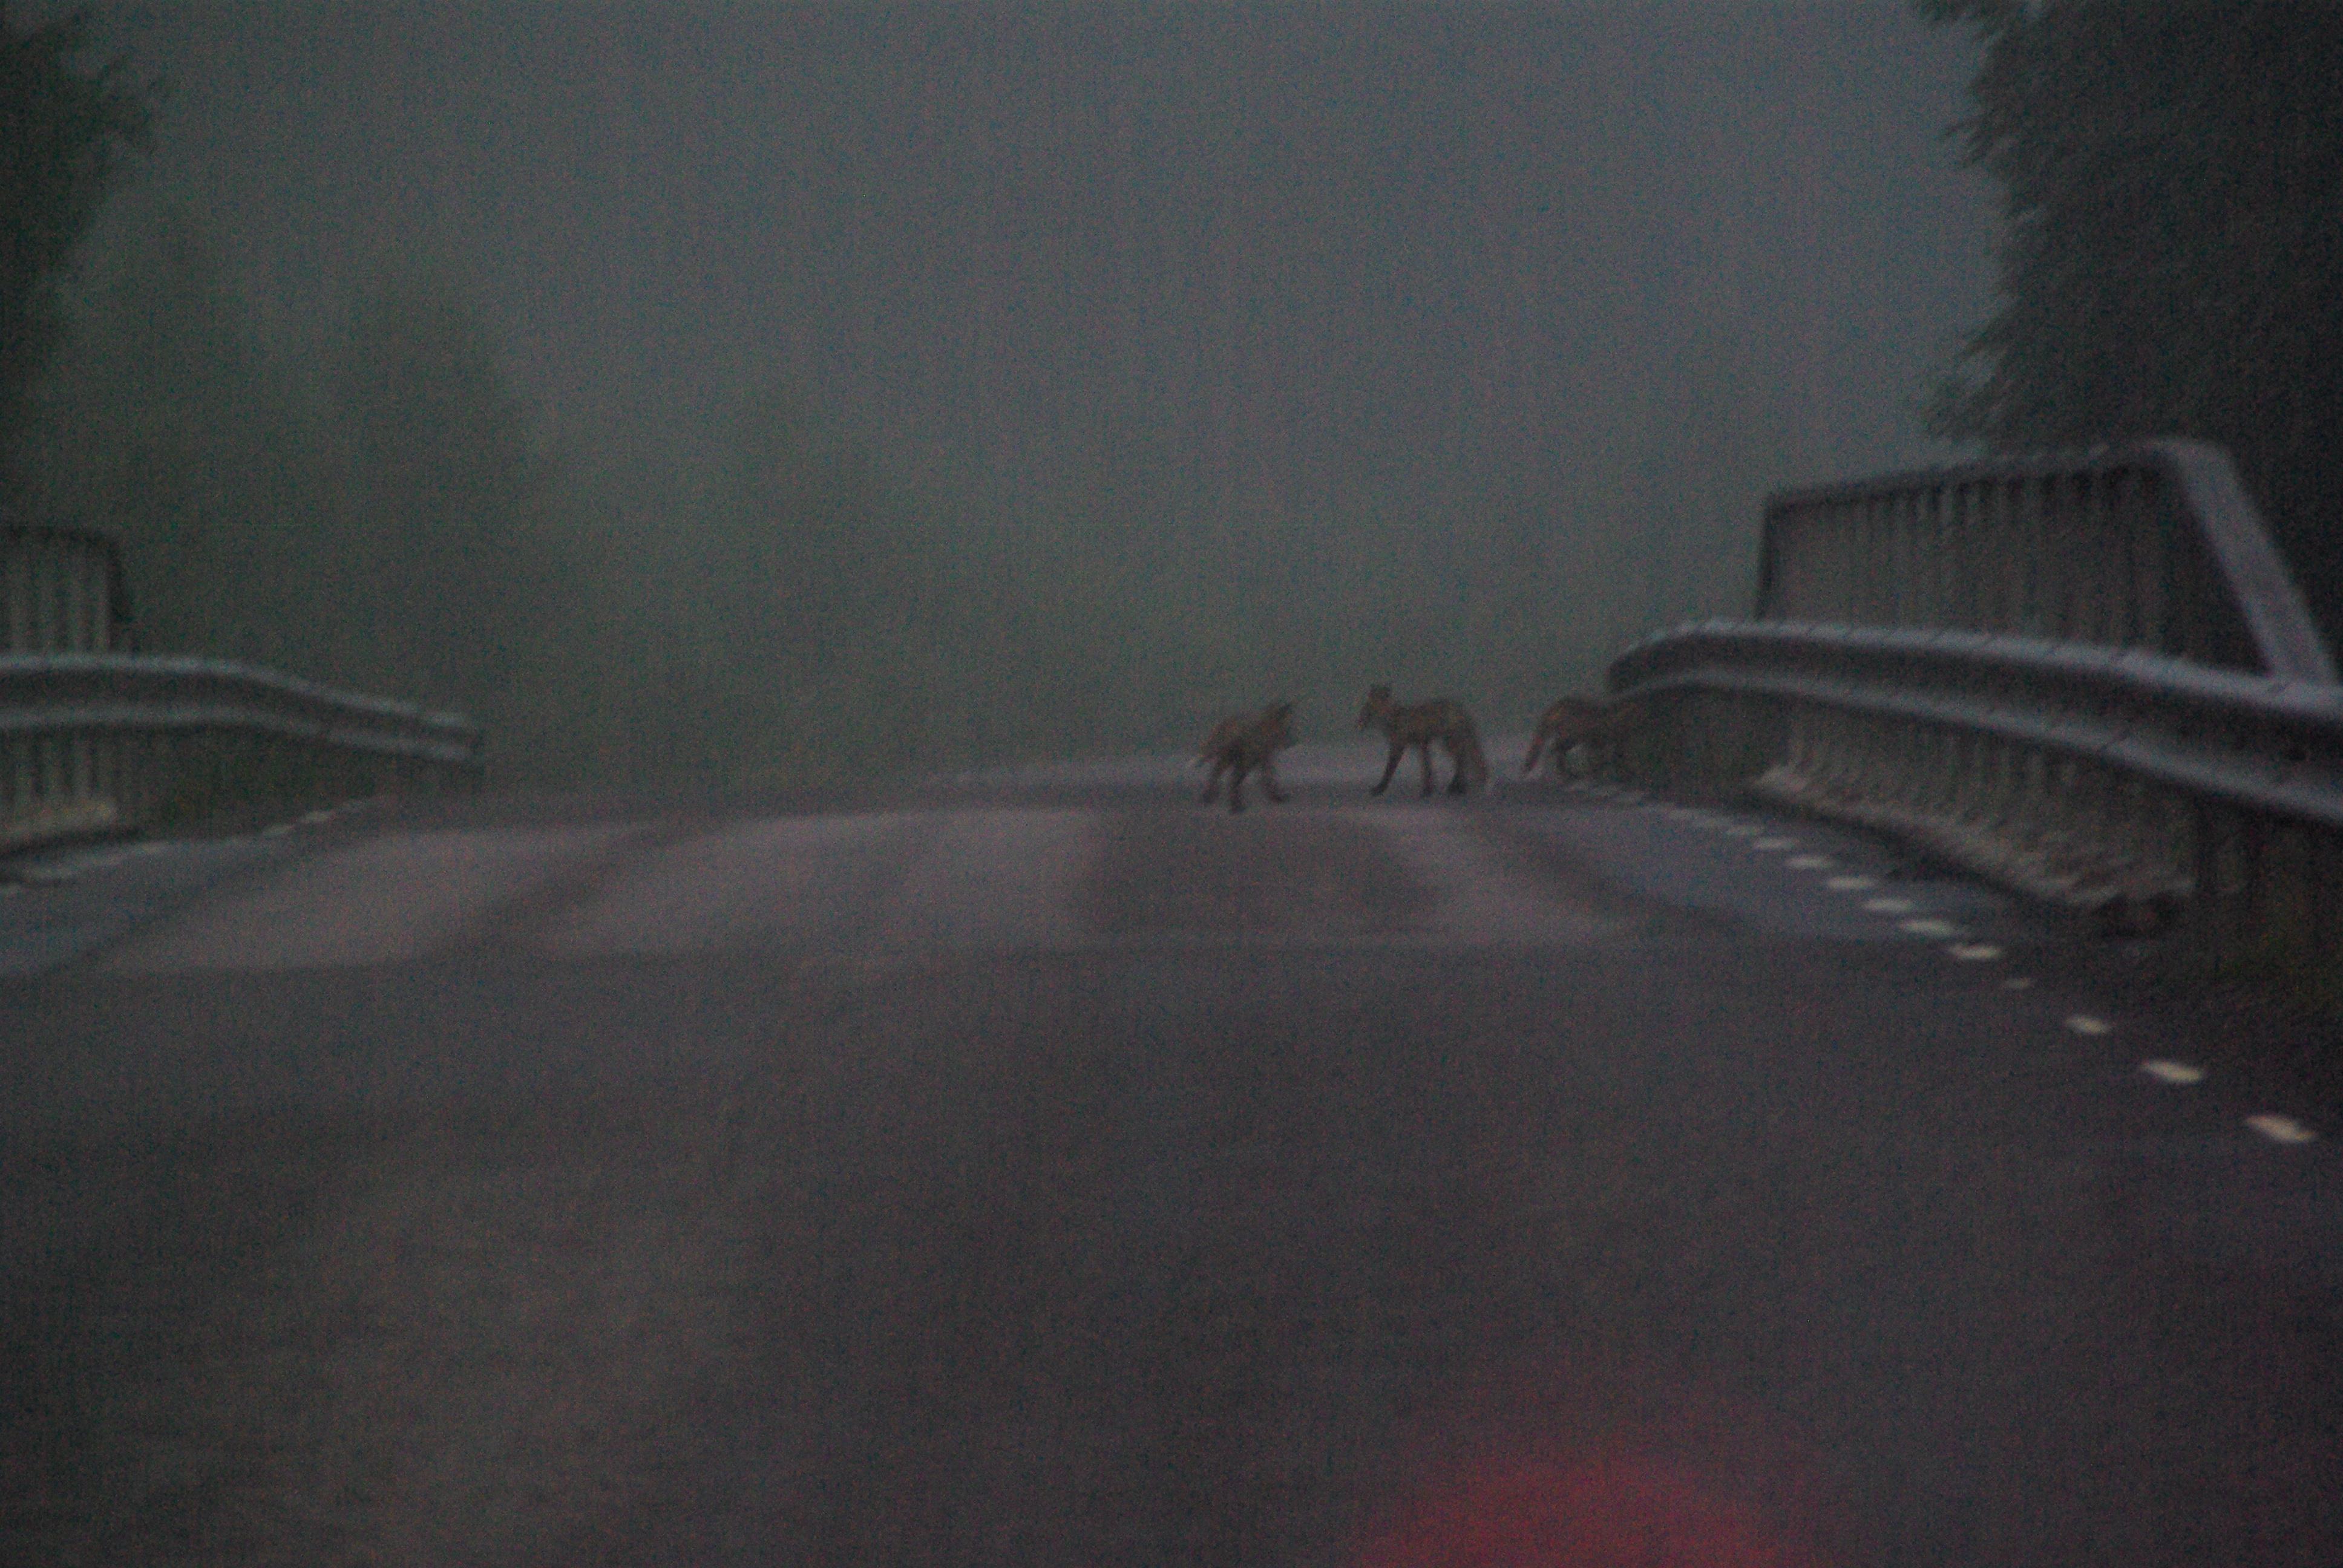 IMGP4599-drie vosjes spelen op de weg.jpg